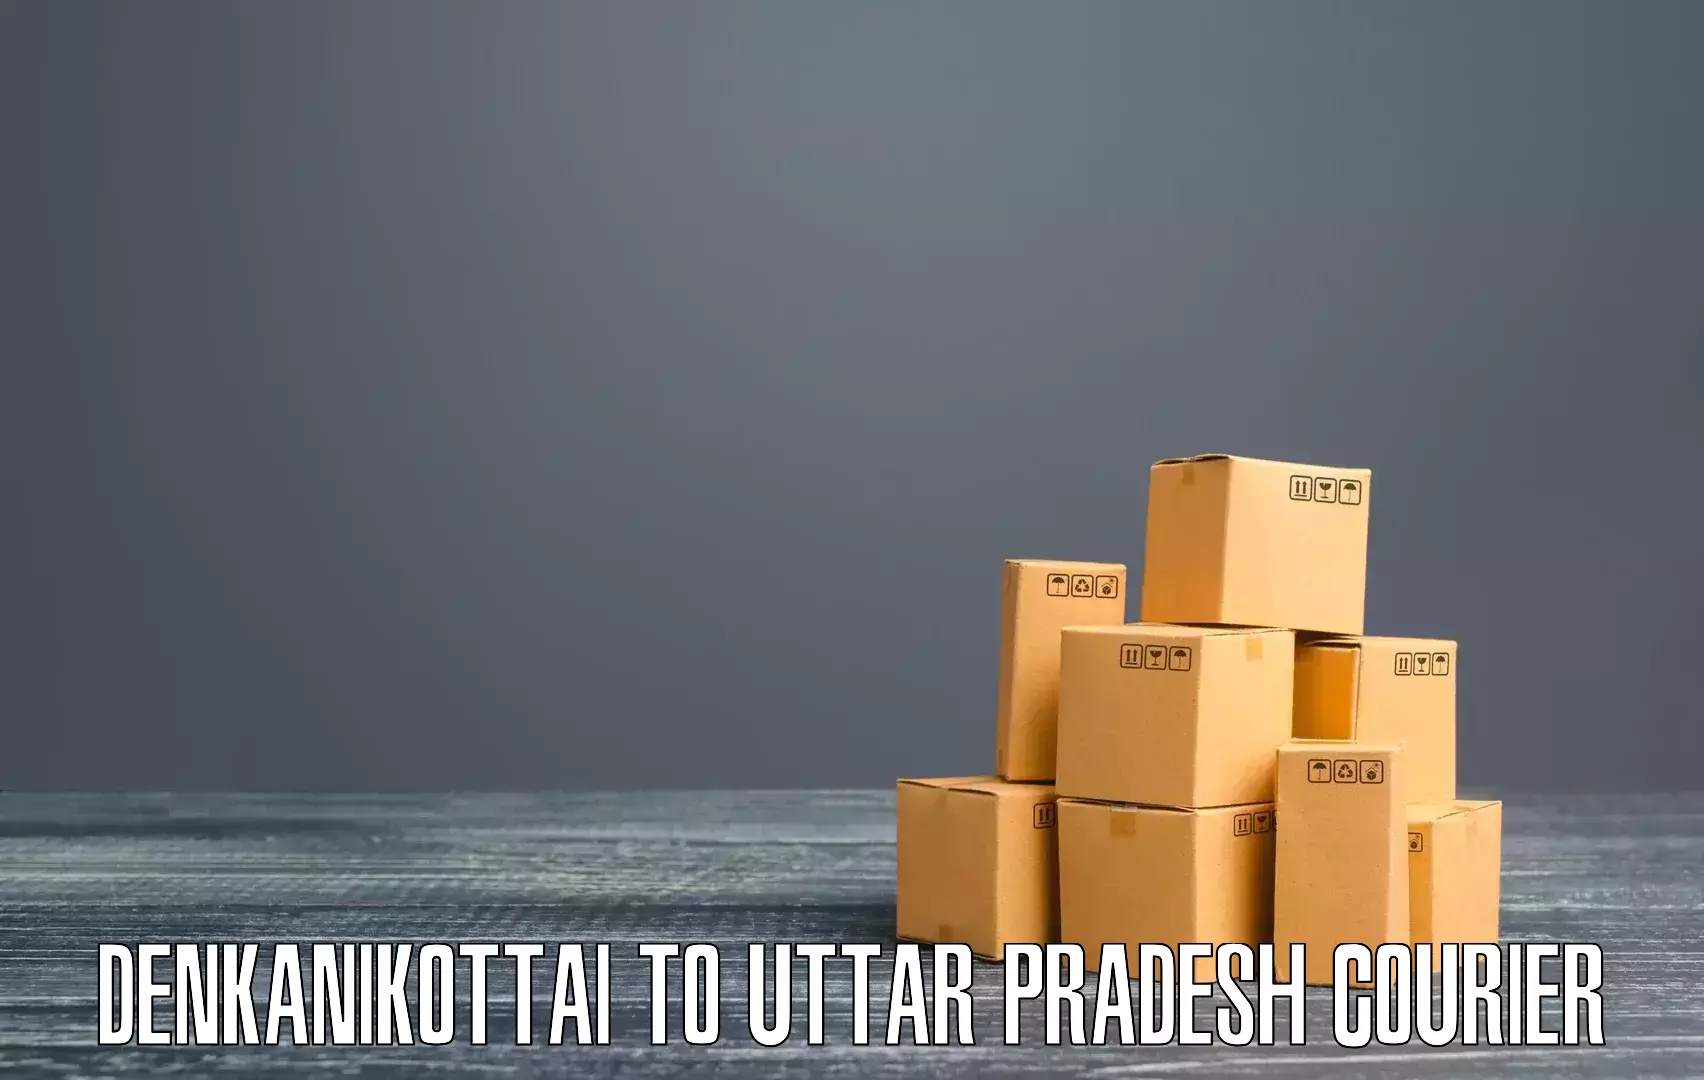 Efficient parcel tracking Denkanikottai to Sultanpur